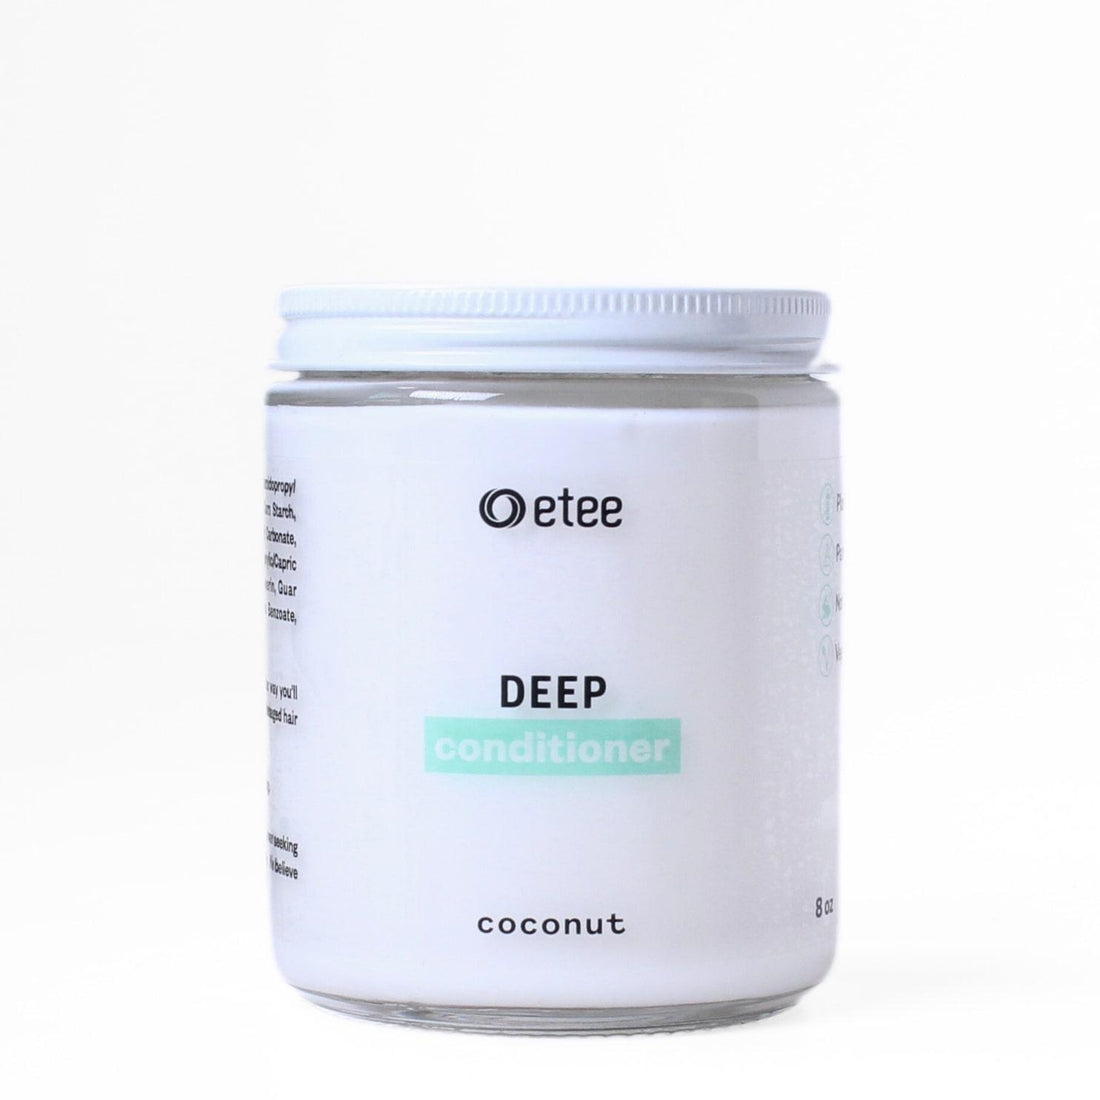 Single jar of etee coconut deep conditioner